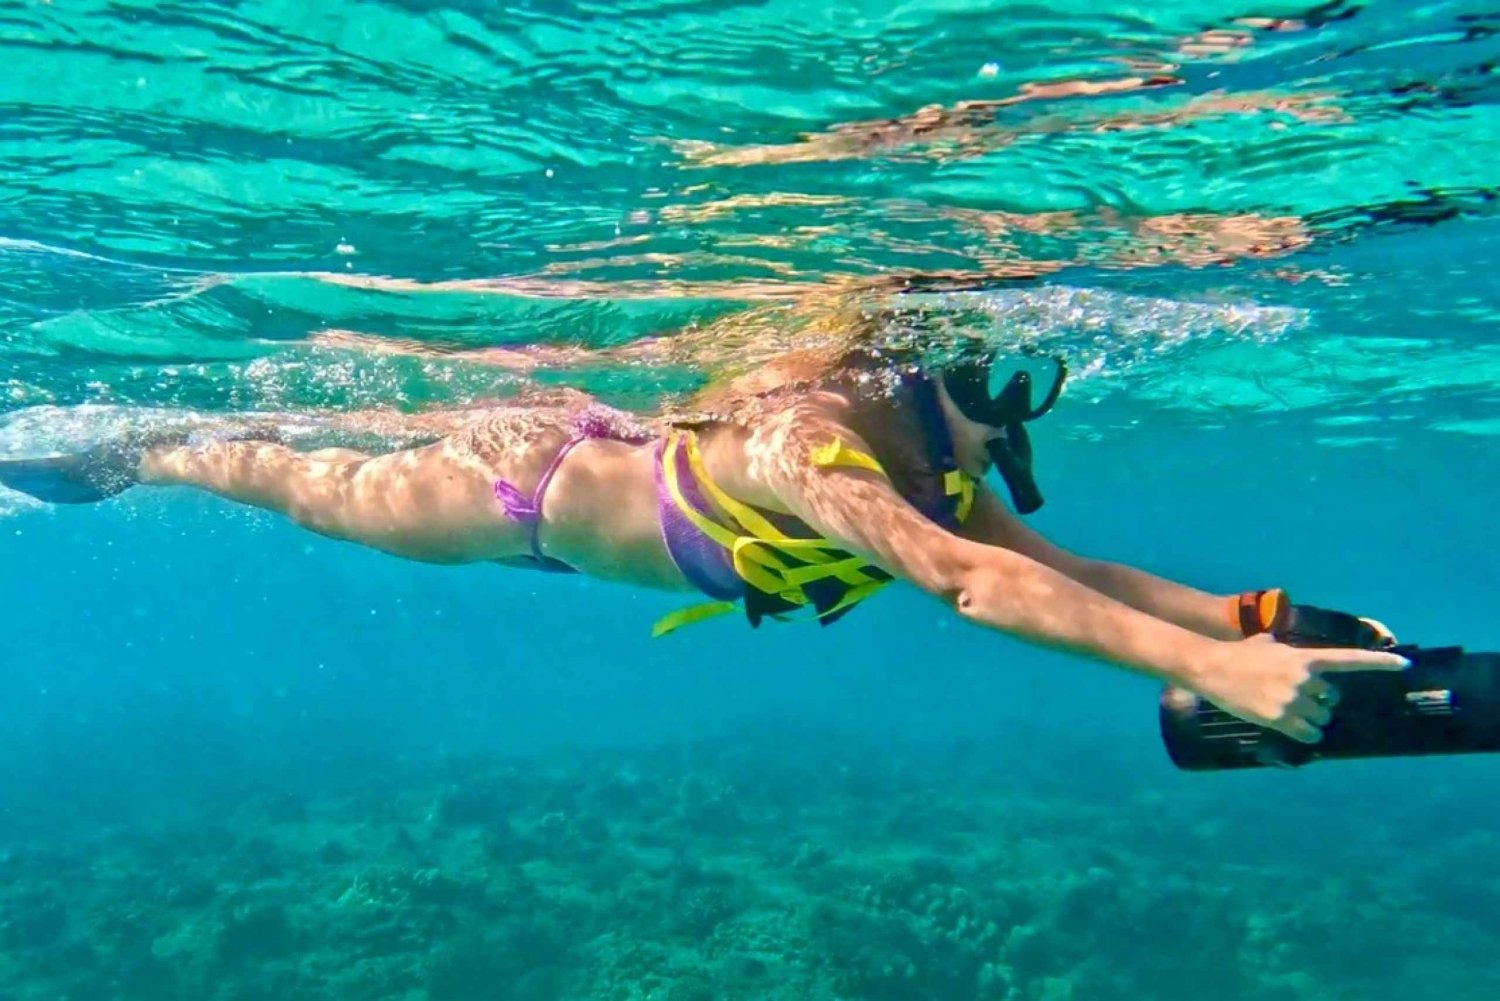 Waikiki: Tour di snorkeling con delfini e tartarughe nella baia delle foche monache